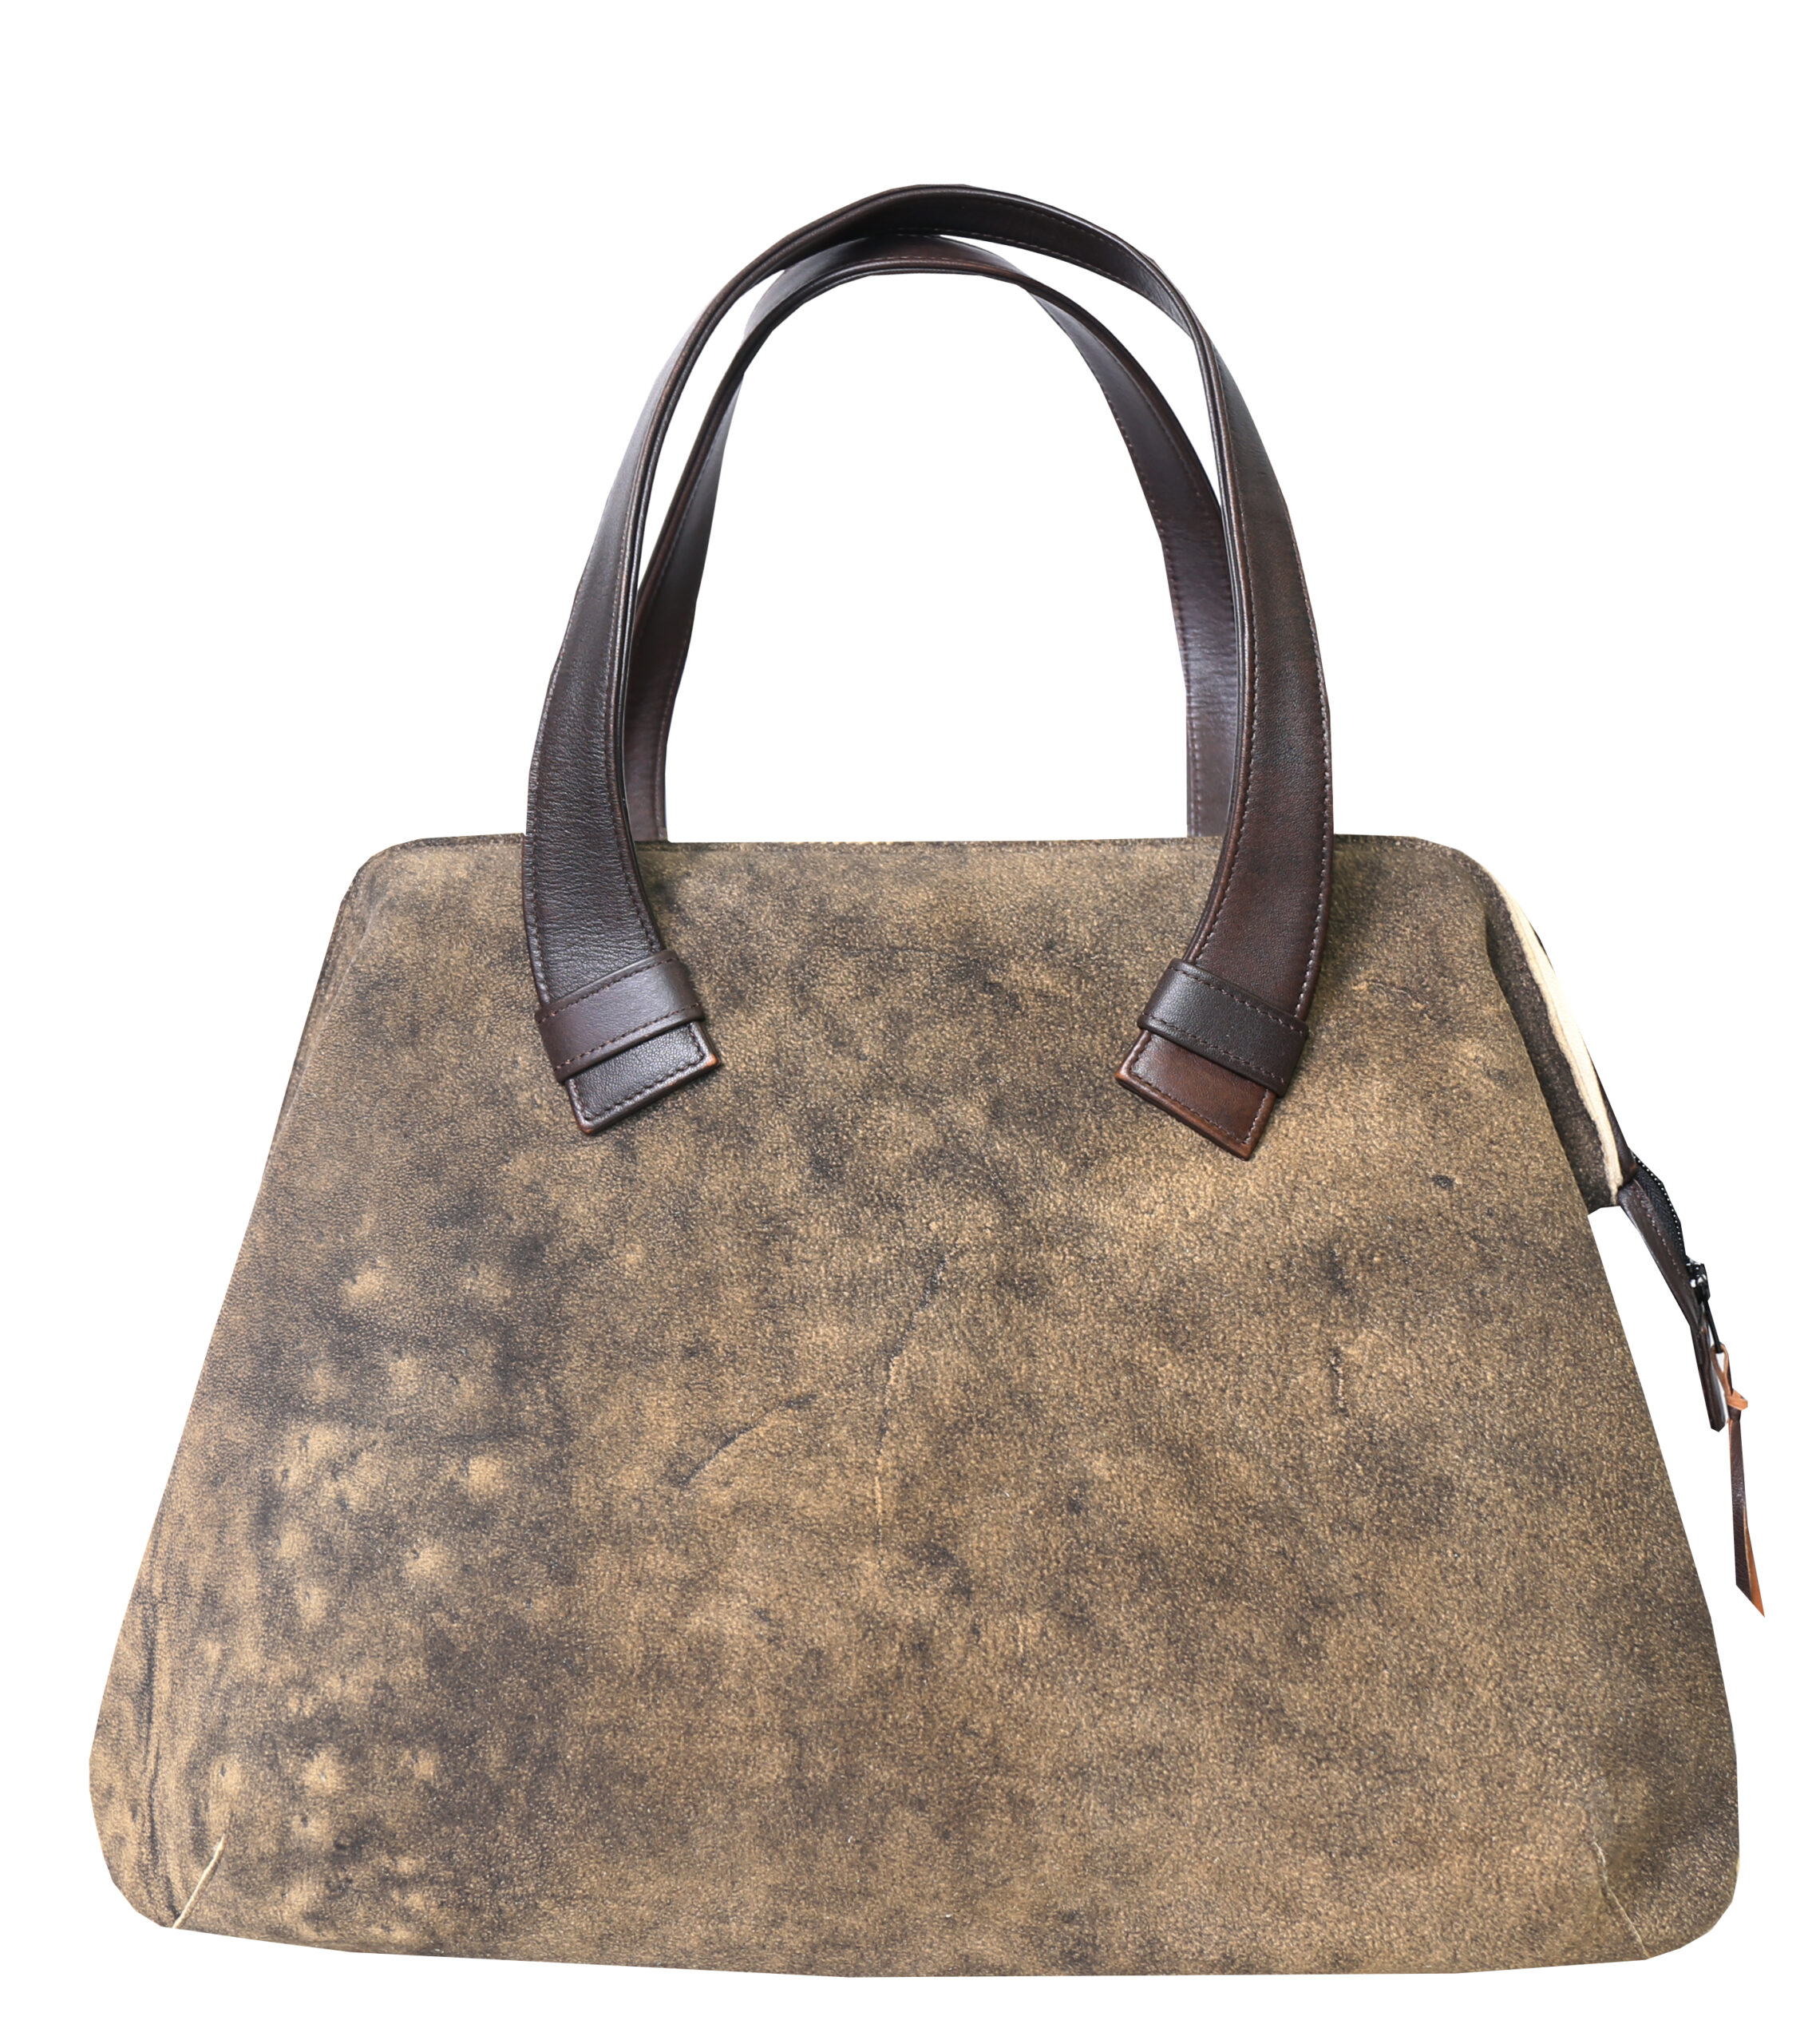 Deer Leather Bag “Capri Bag”, old black